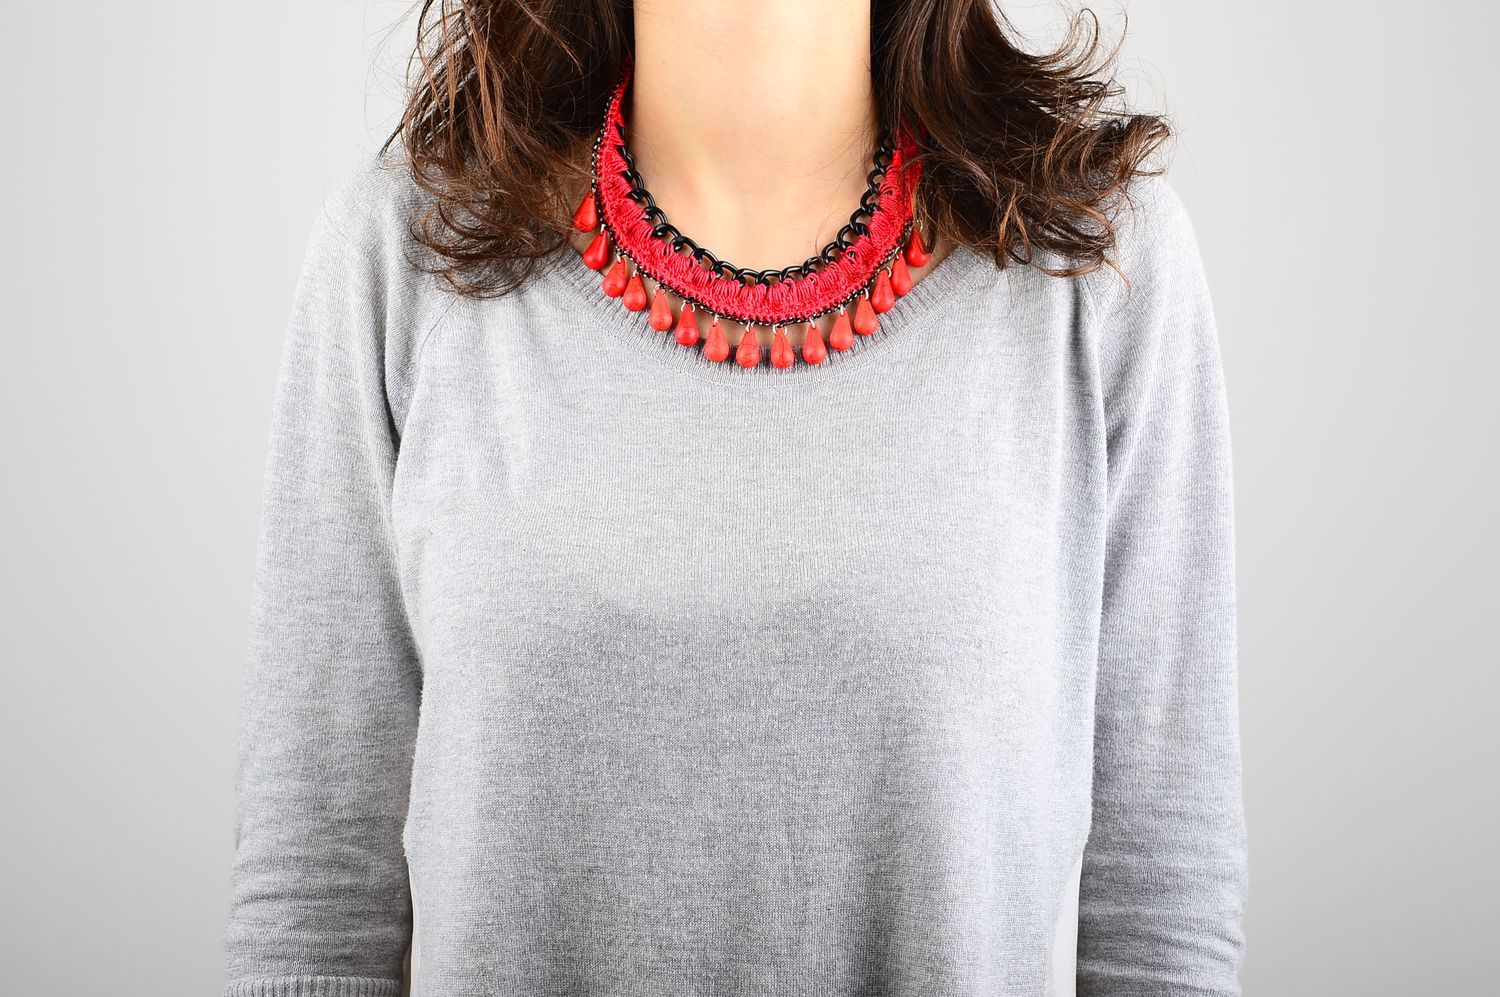 Handmade beaded necklace designer textile accessory stylish necklace gift photo 1